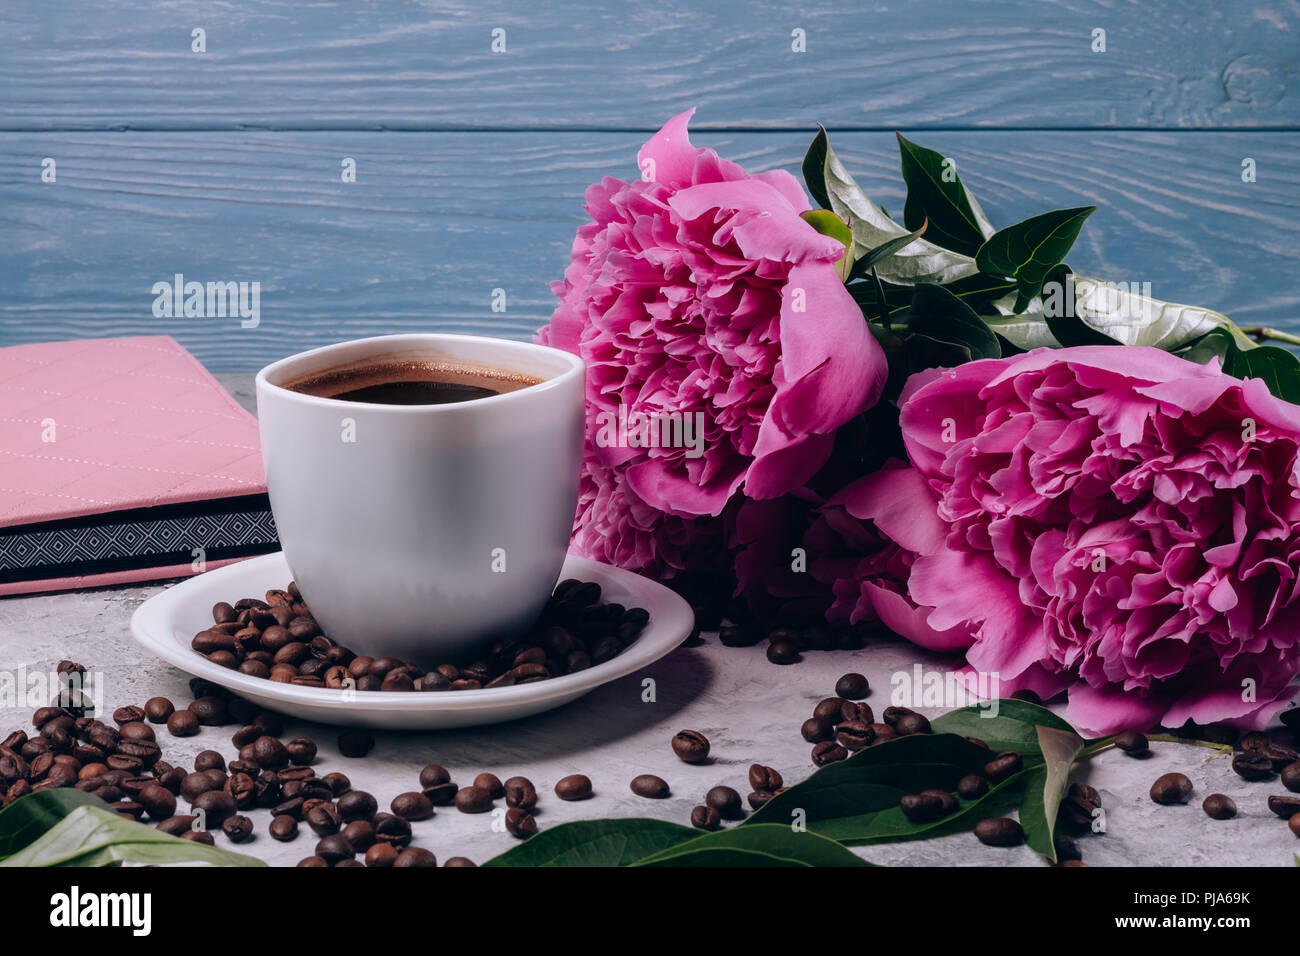 Schöne Päonien mit riesigen rosa Knospen auf den Tisch neben einer Tasse Kaffee auf einem blauen Hintergrund Stockfoto